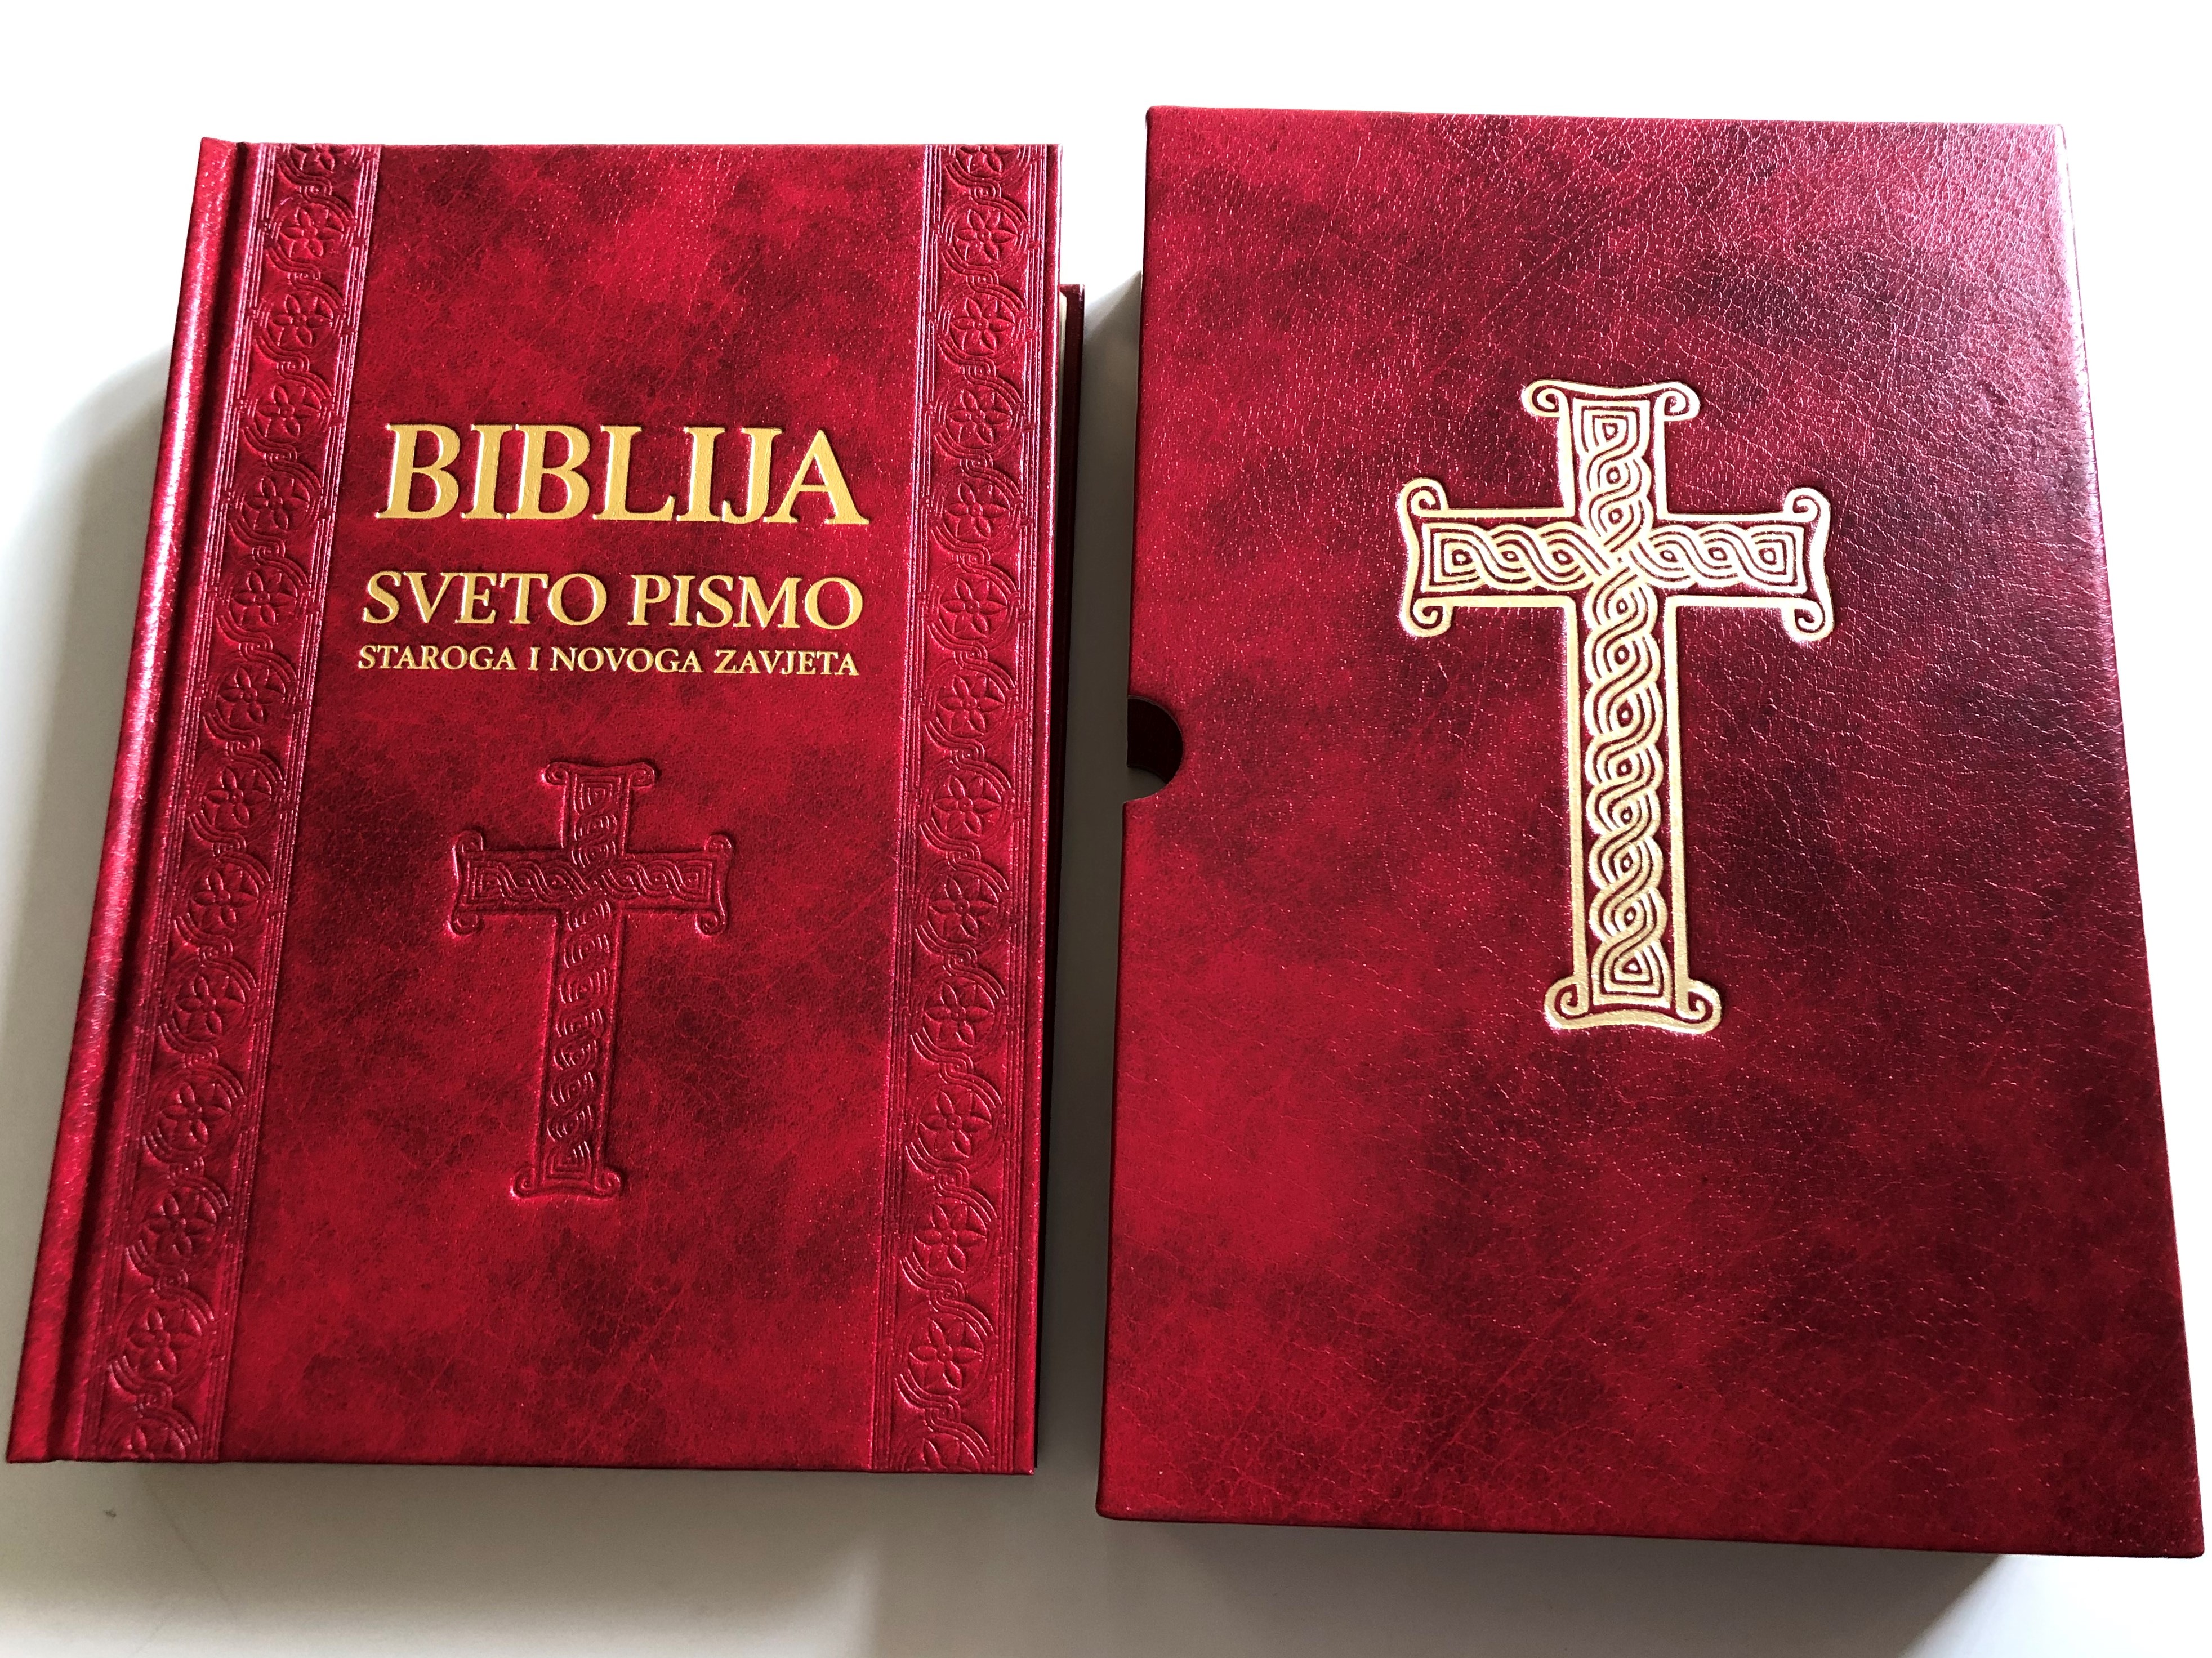 -biblija-sveto-pismo-staroga-i-novoga-zavjeta-croatian-deluxe-holy-bible-golden-edges-hardcover-in-box-6.jpg